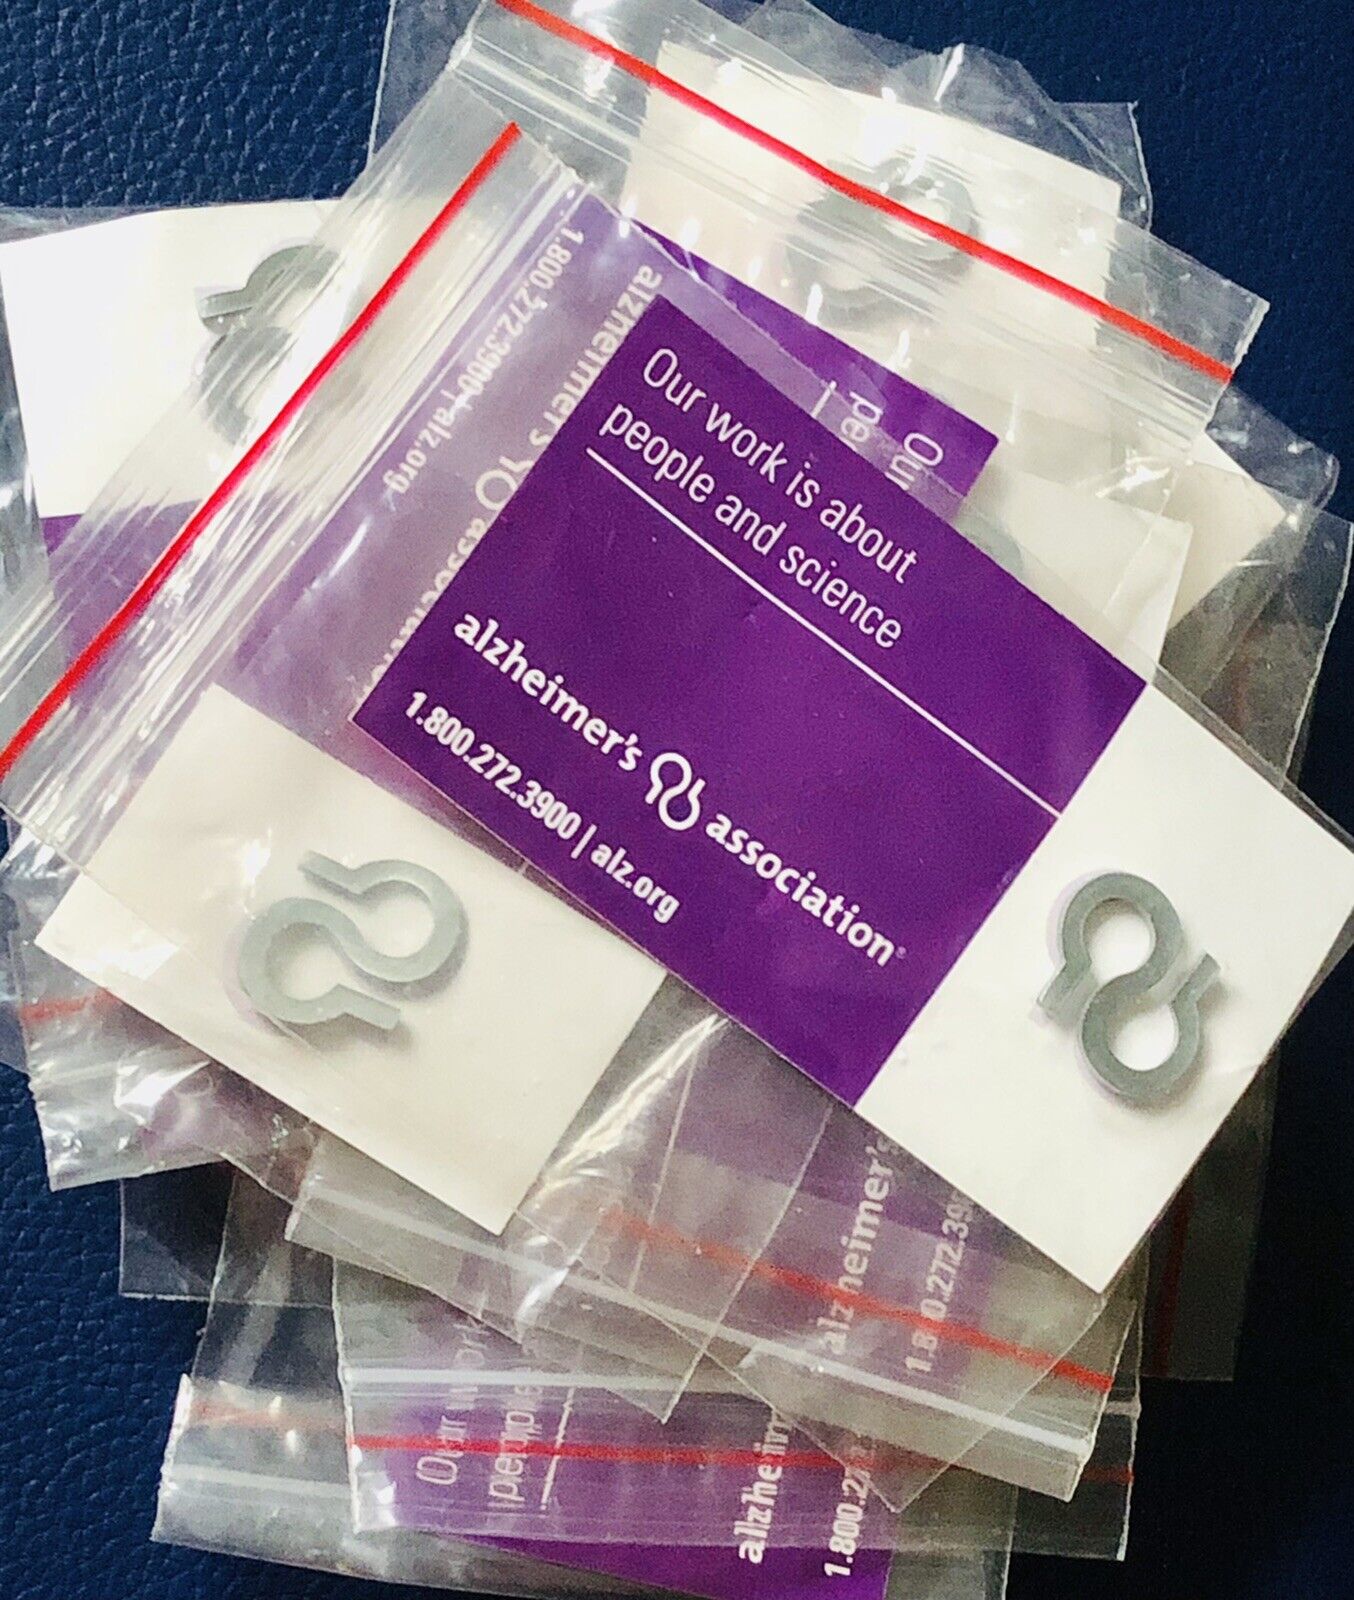 10 Alzheimer’s Awareness Association Pins (10 Pin Lot) In Original Package